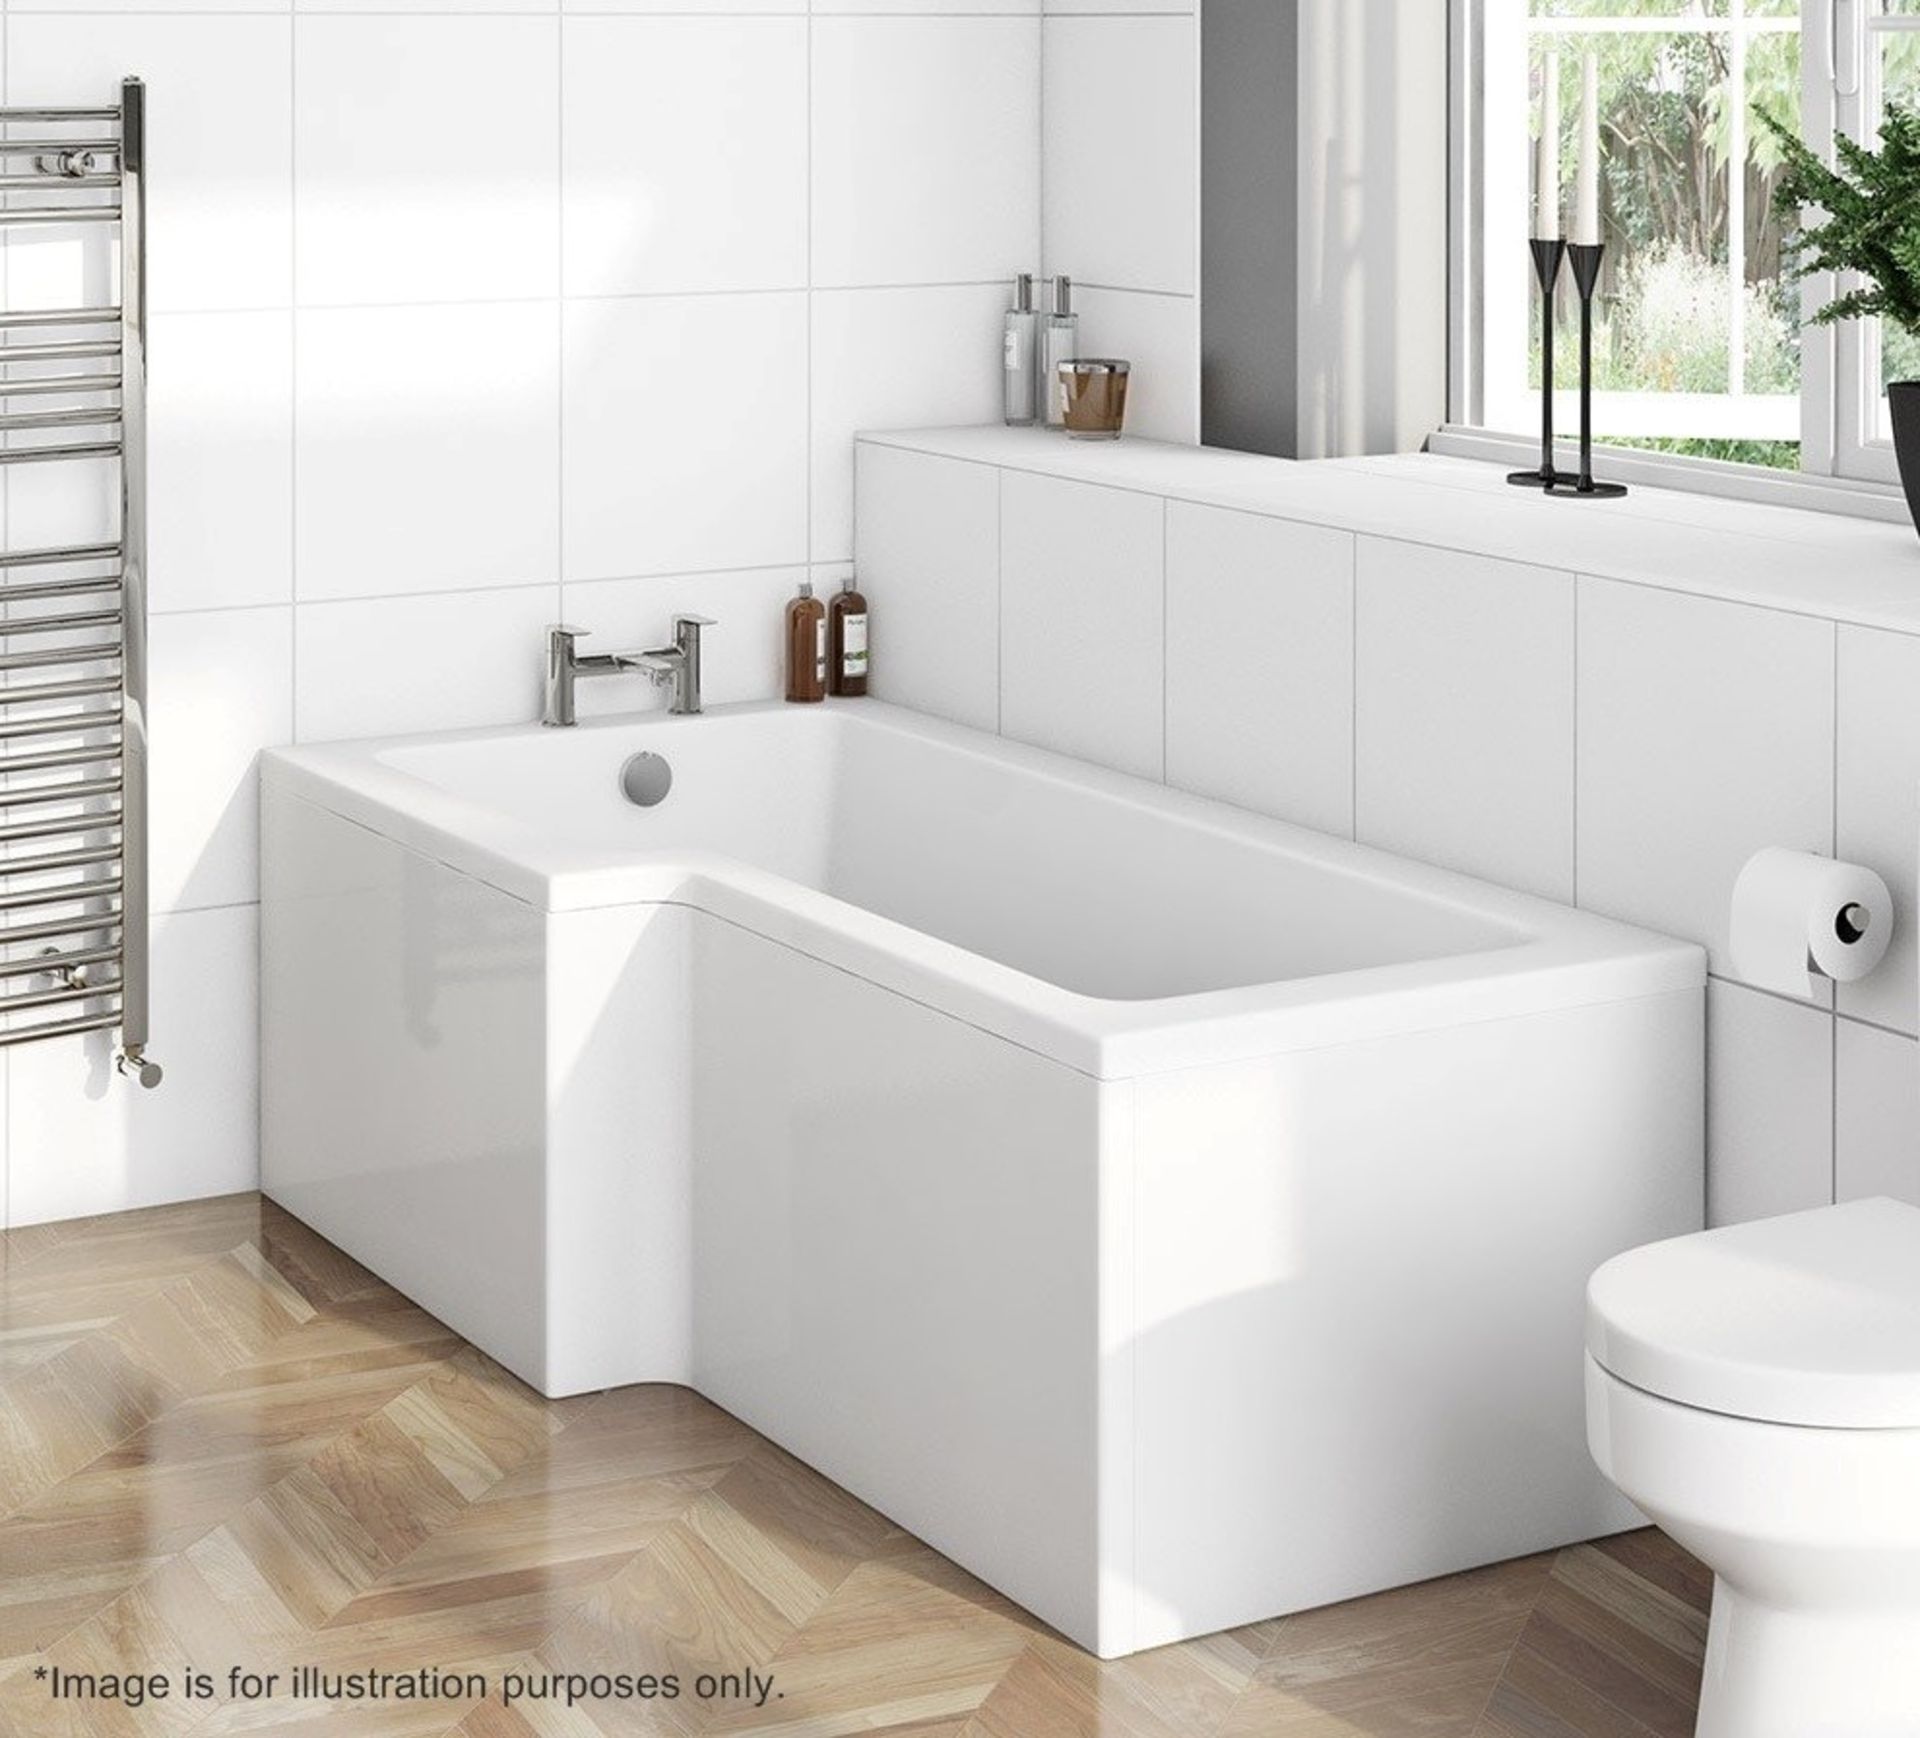 1 x Boston Left Hand L Shape Shower Bath Tub - 1700 x 850 - No Tap Pln Encap - Colour: White -